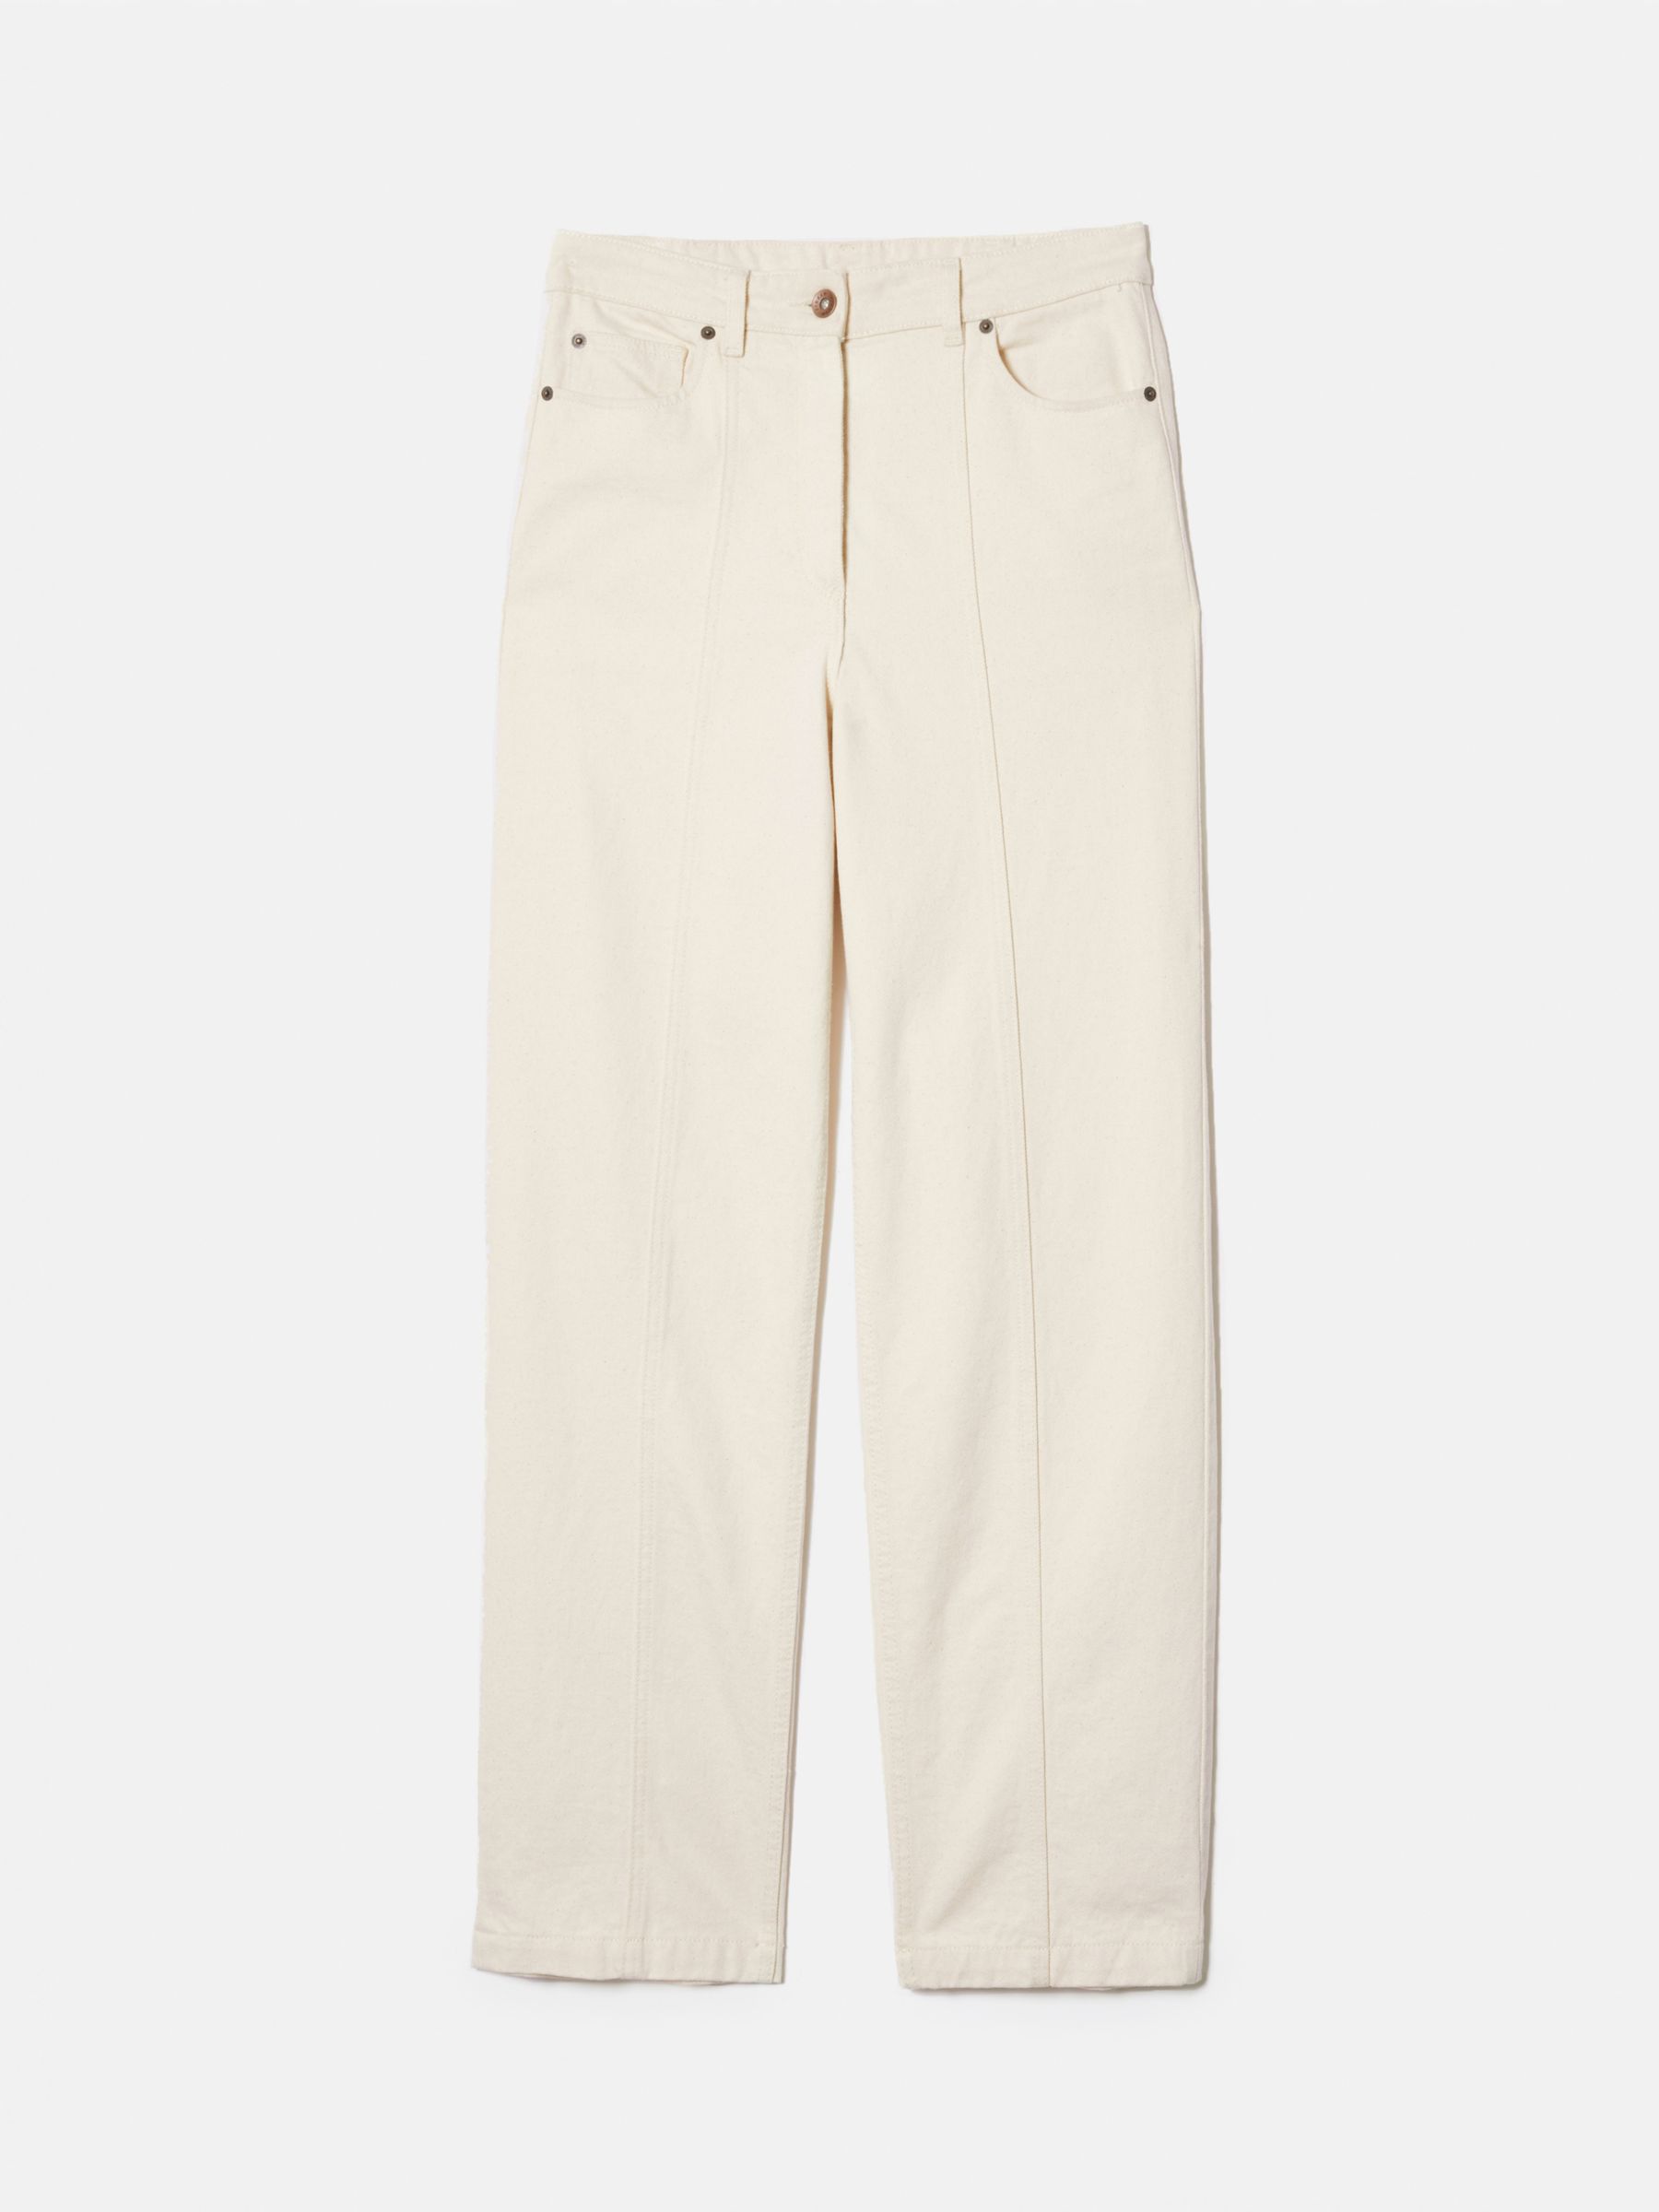 Джинсы свободного кроя Jigsaw Tailored, экрю джинсы tailored базовые 42 размер